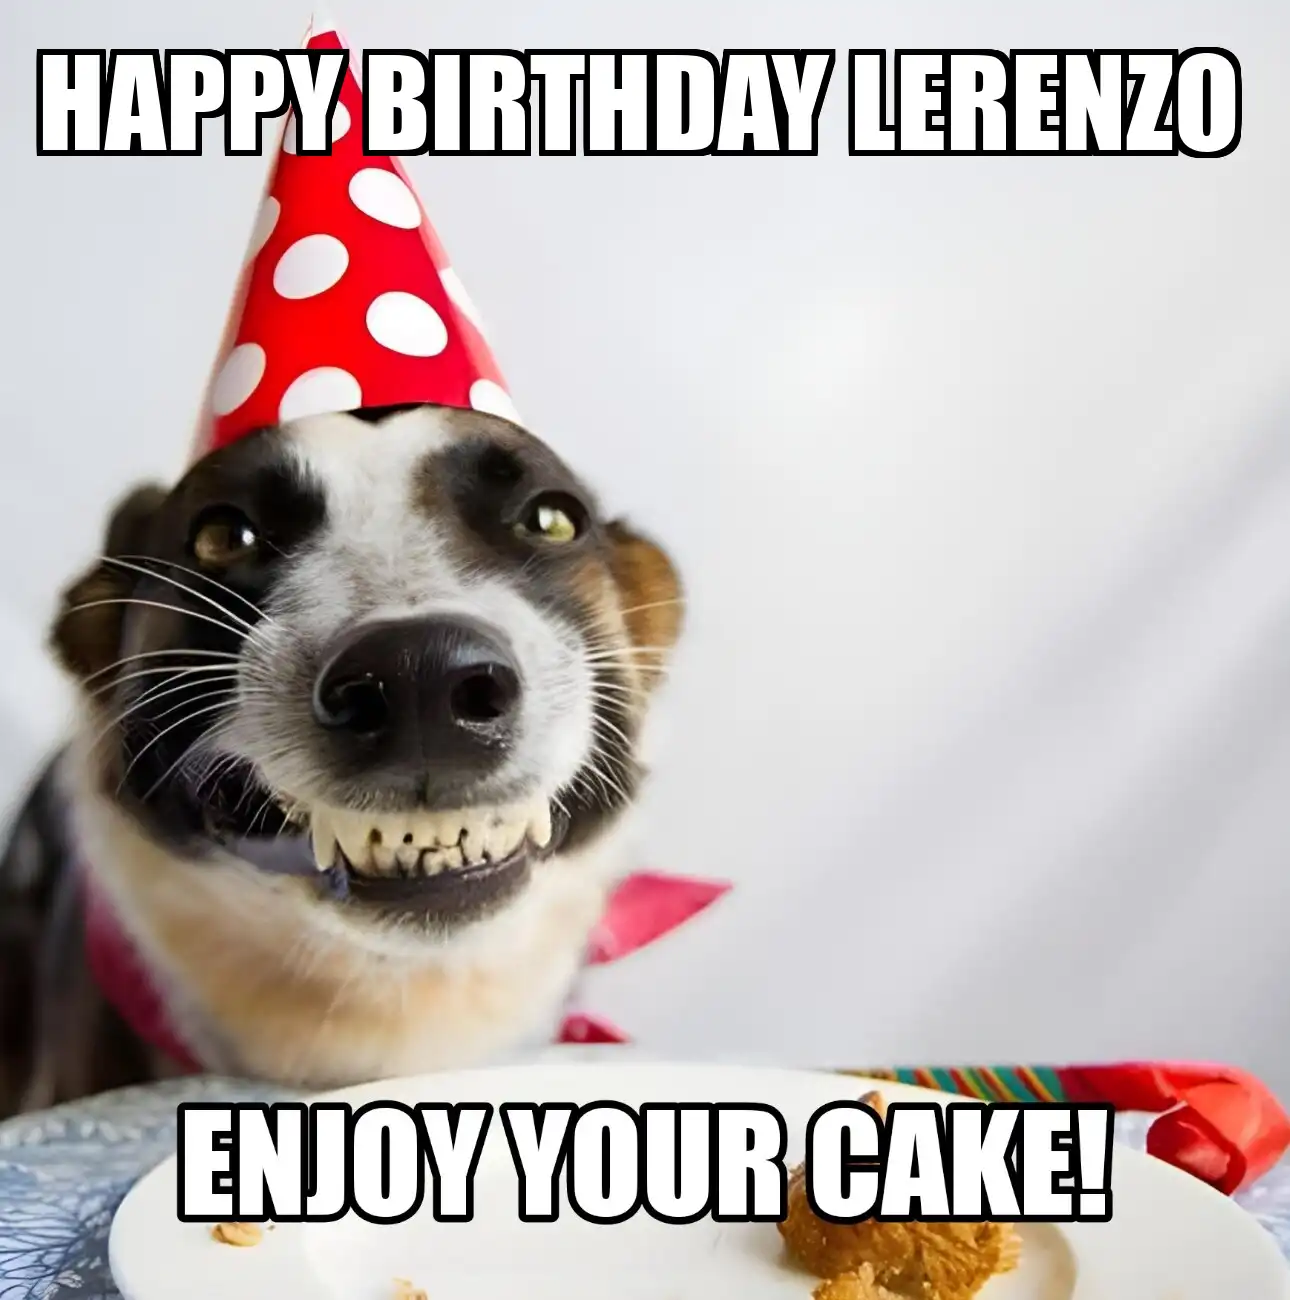 Happy Birthday Lerenzo Enjoy Your Cake Dog Meme